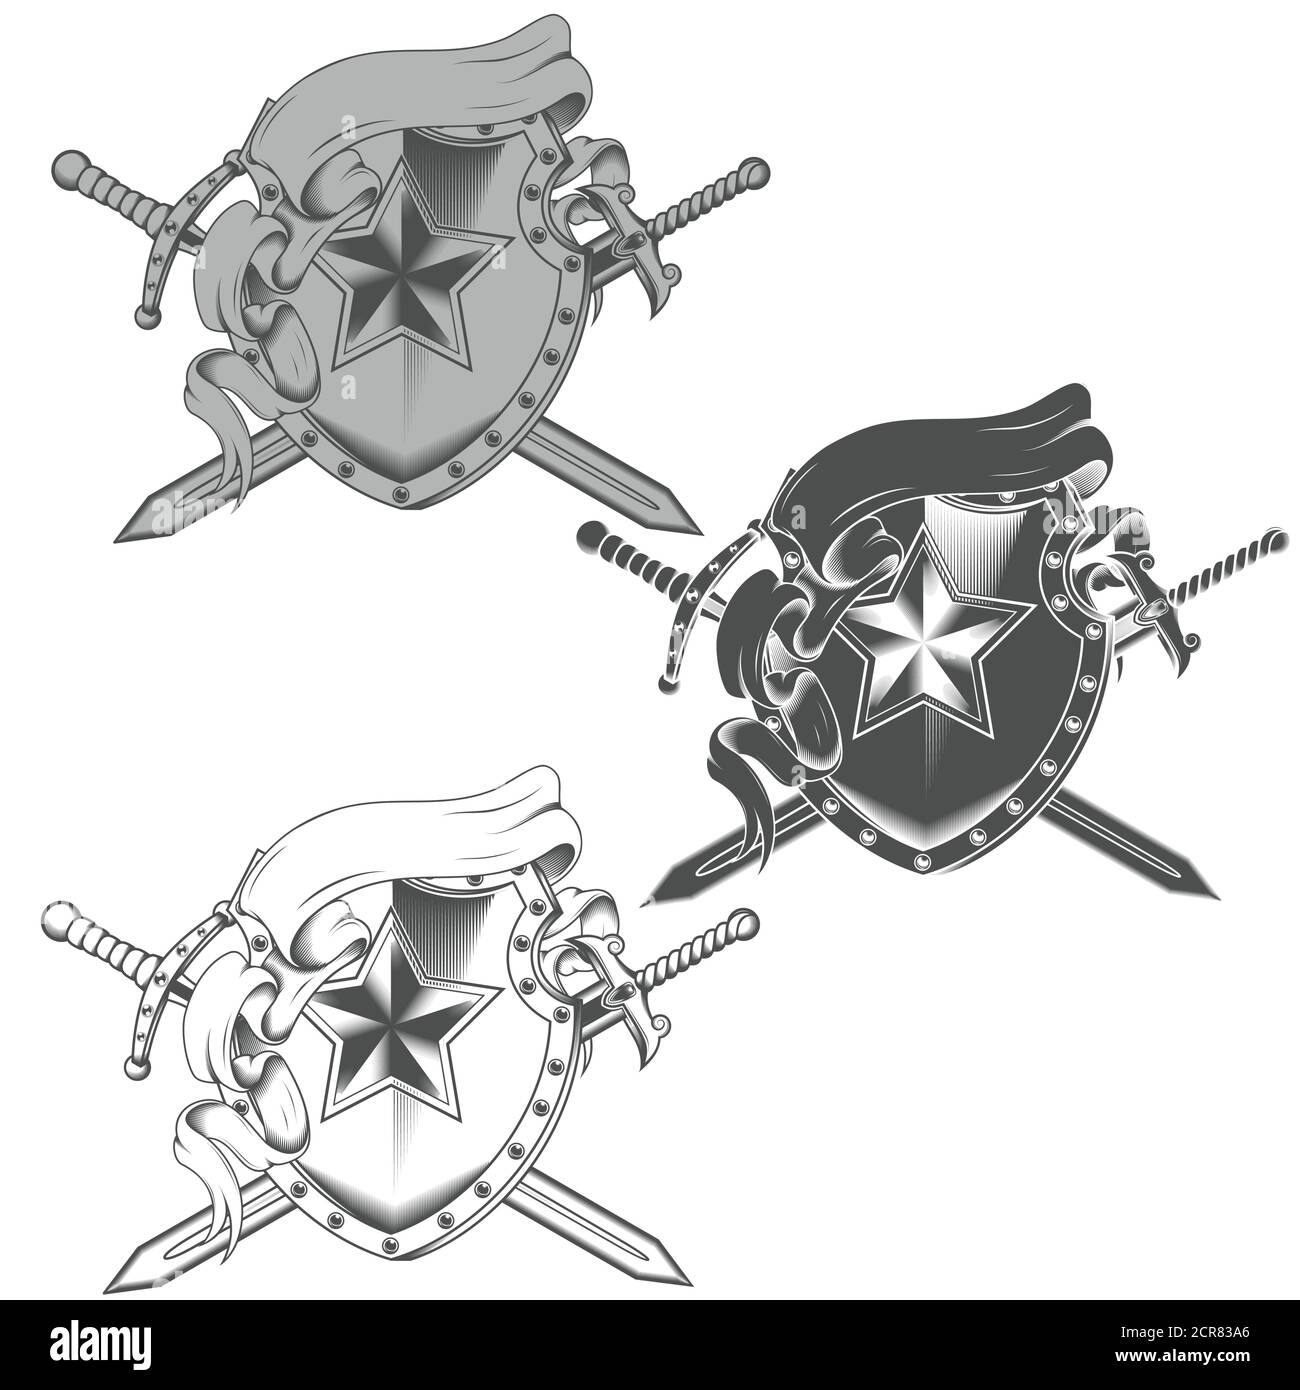 Abbildung des Wappens mit Bändern und zwei Graustufen Schwerter alle auf weißem Hintergrund Stock Vektor